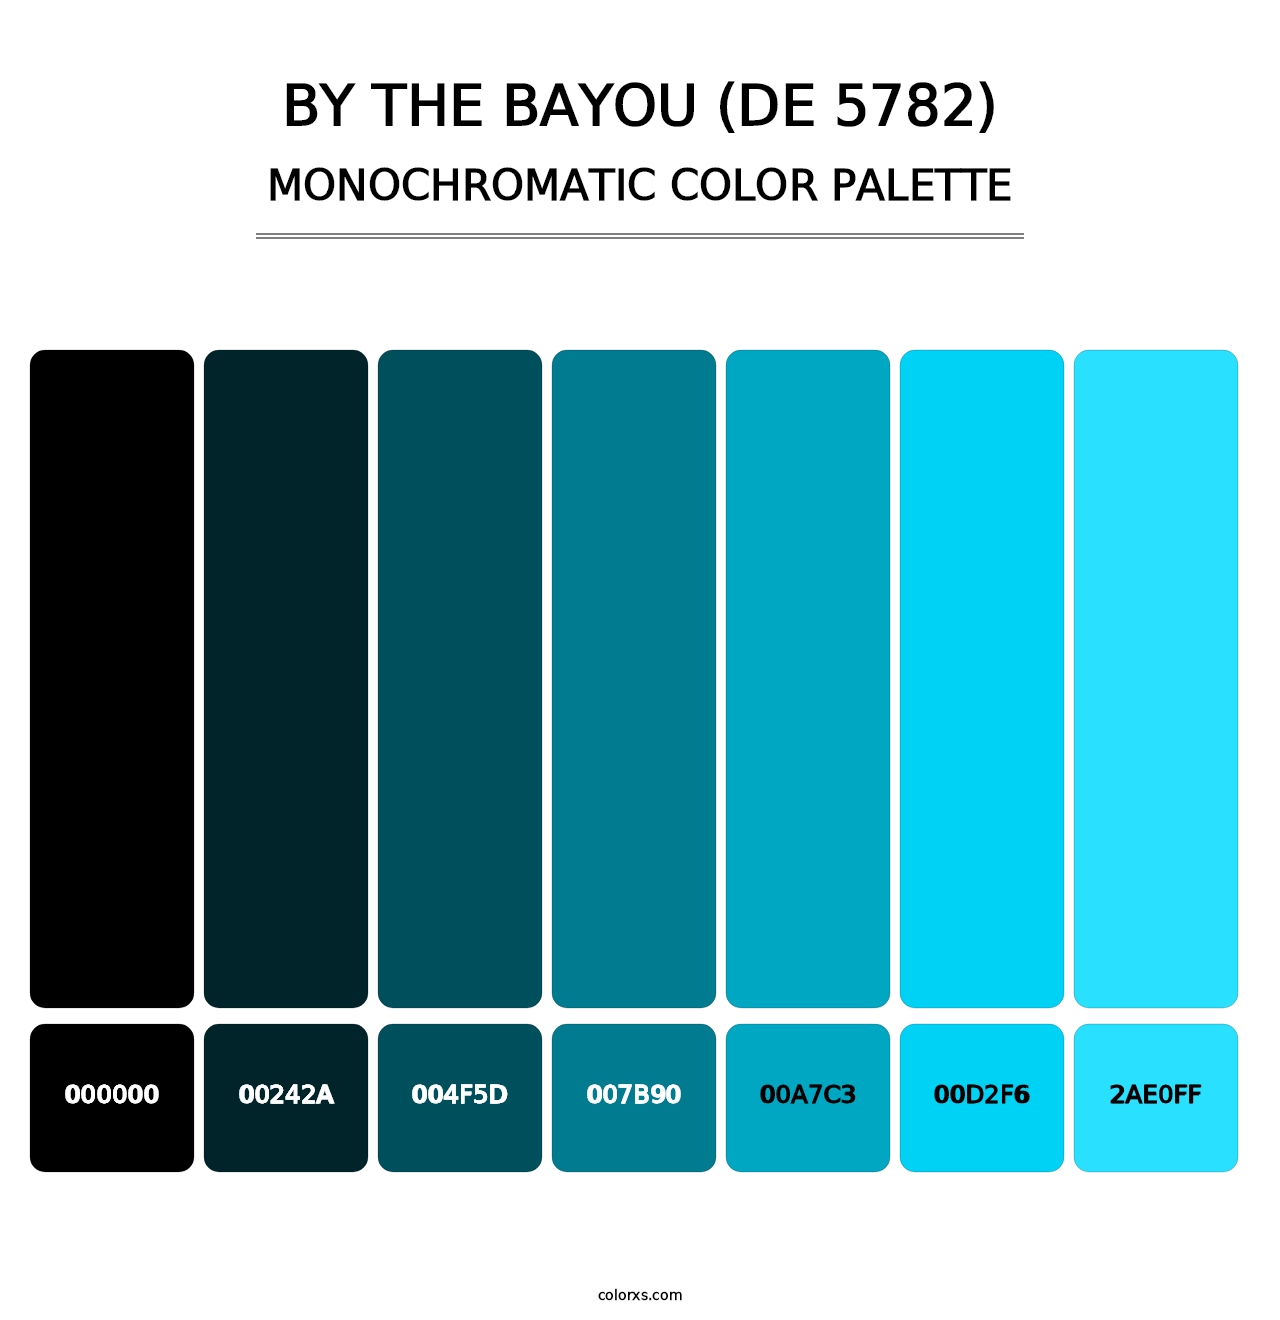 By the Bayou (DE 5782) - Monochromatic Color Palette